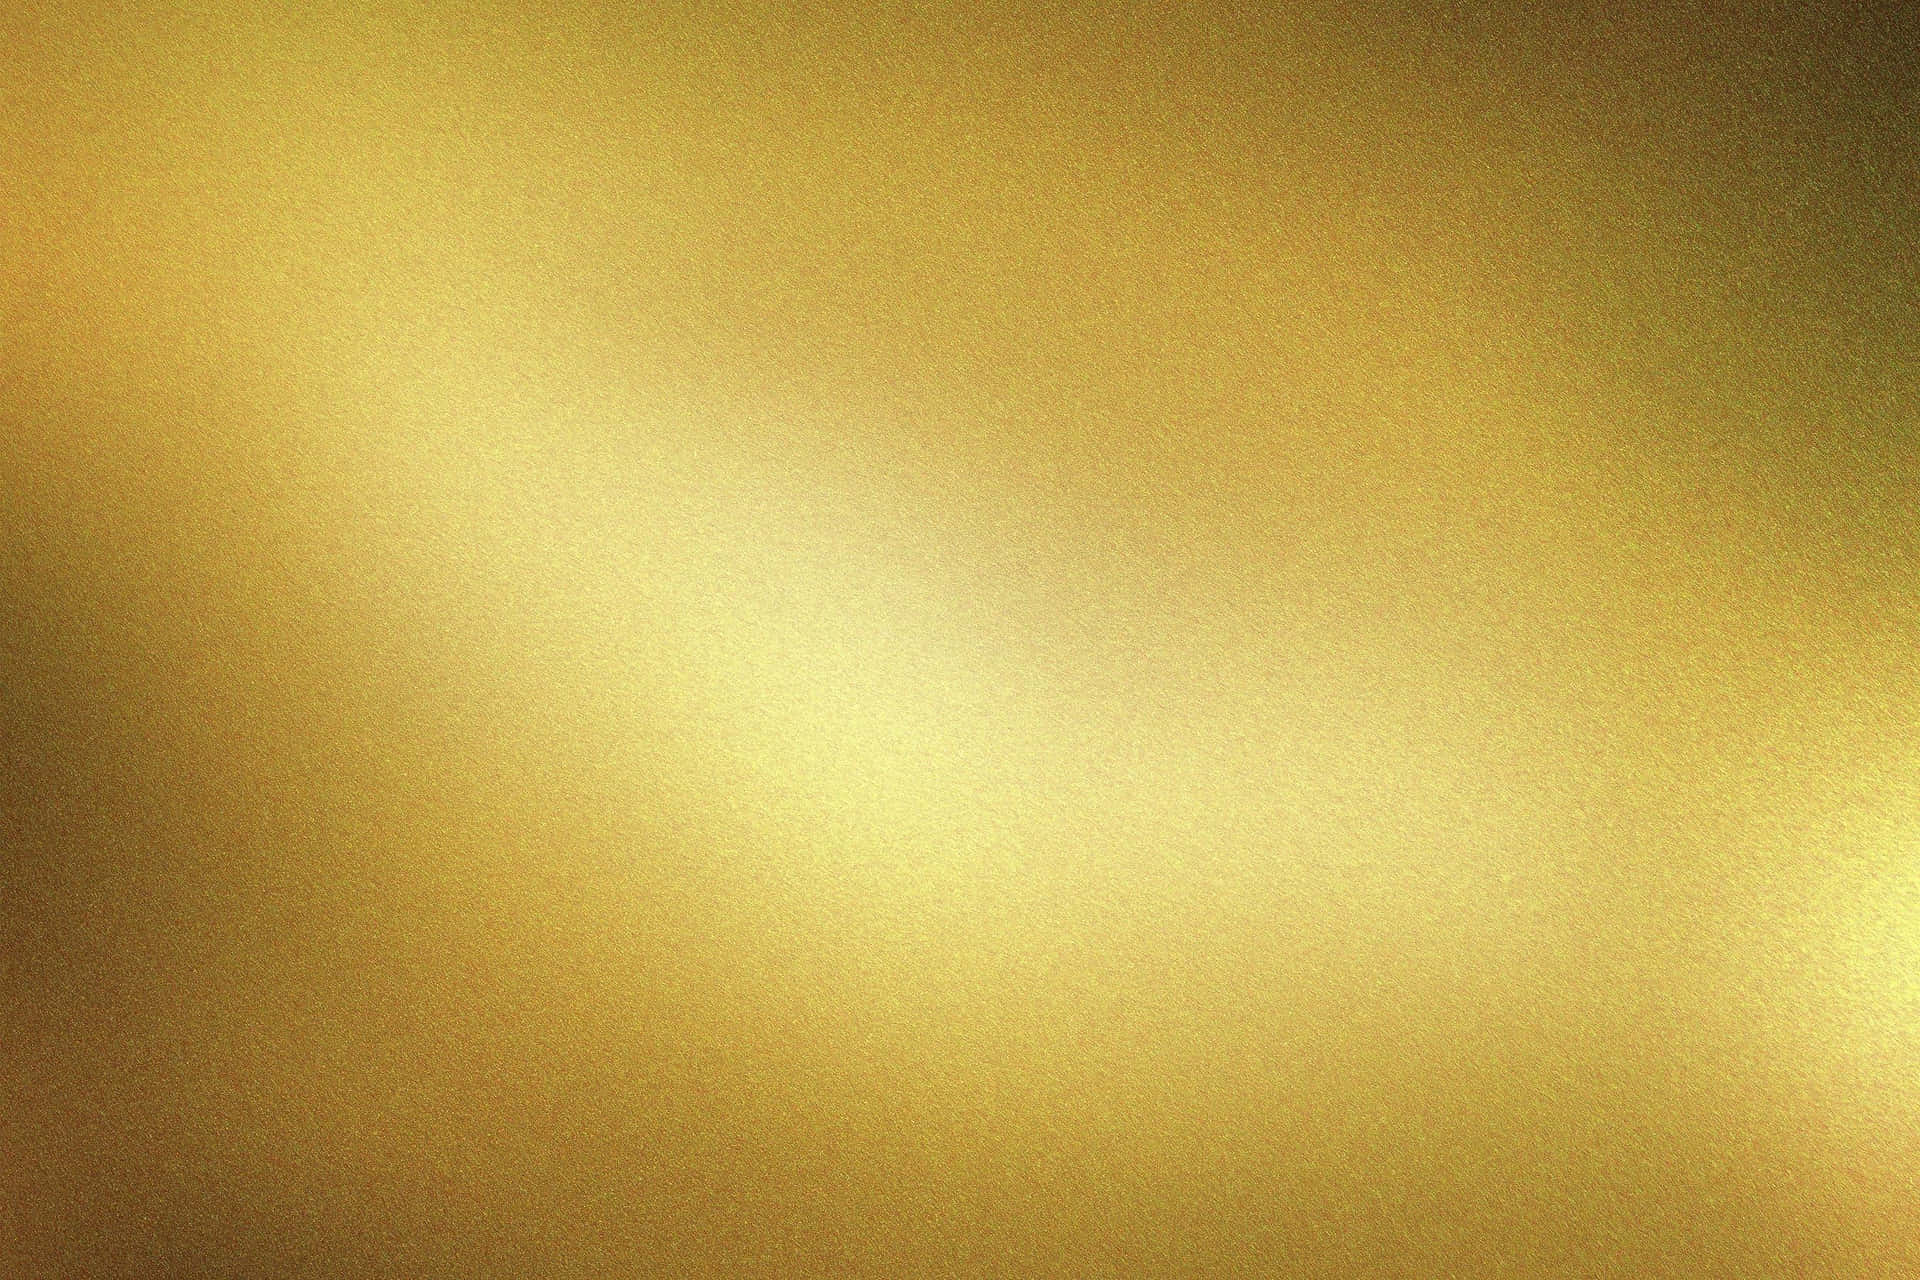 Zara Shimmer Metallic wallpaper in navy & gold | I Love Wallpaper